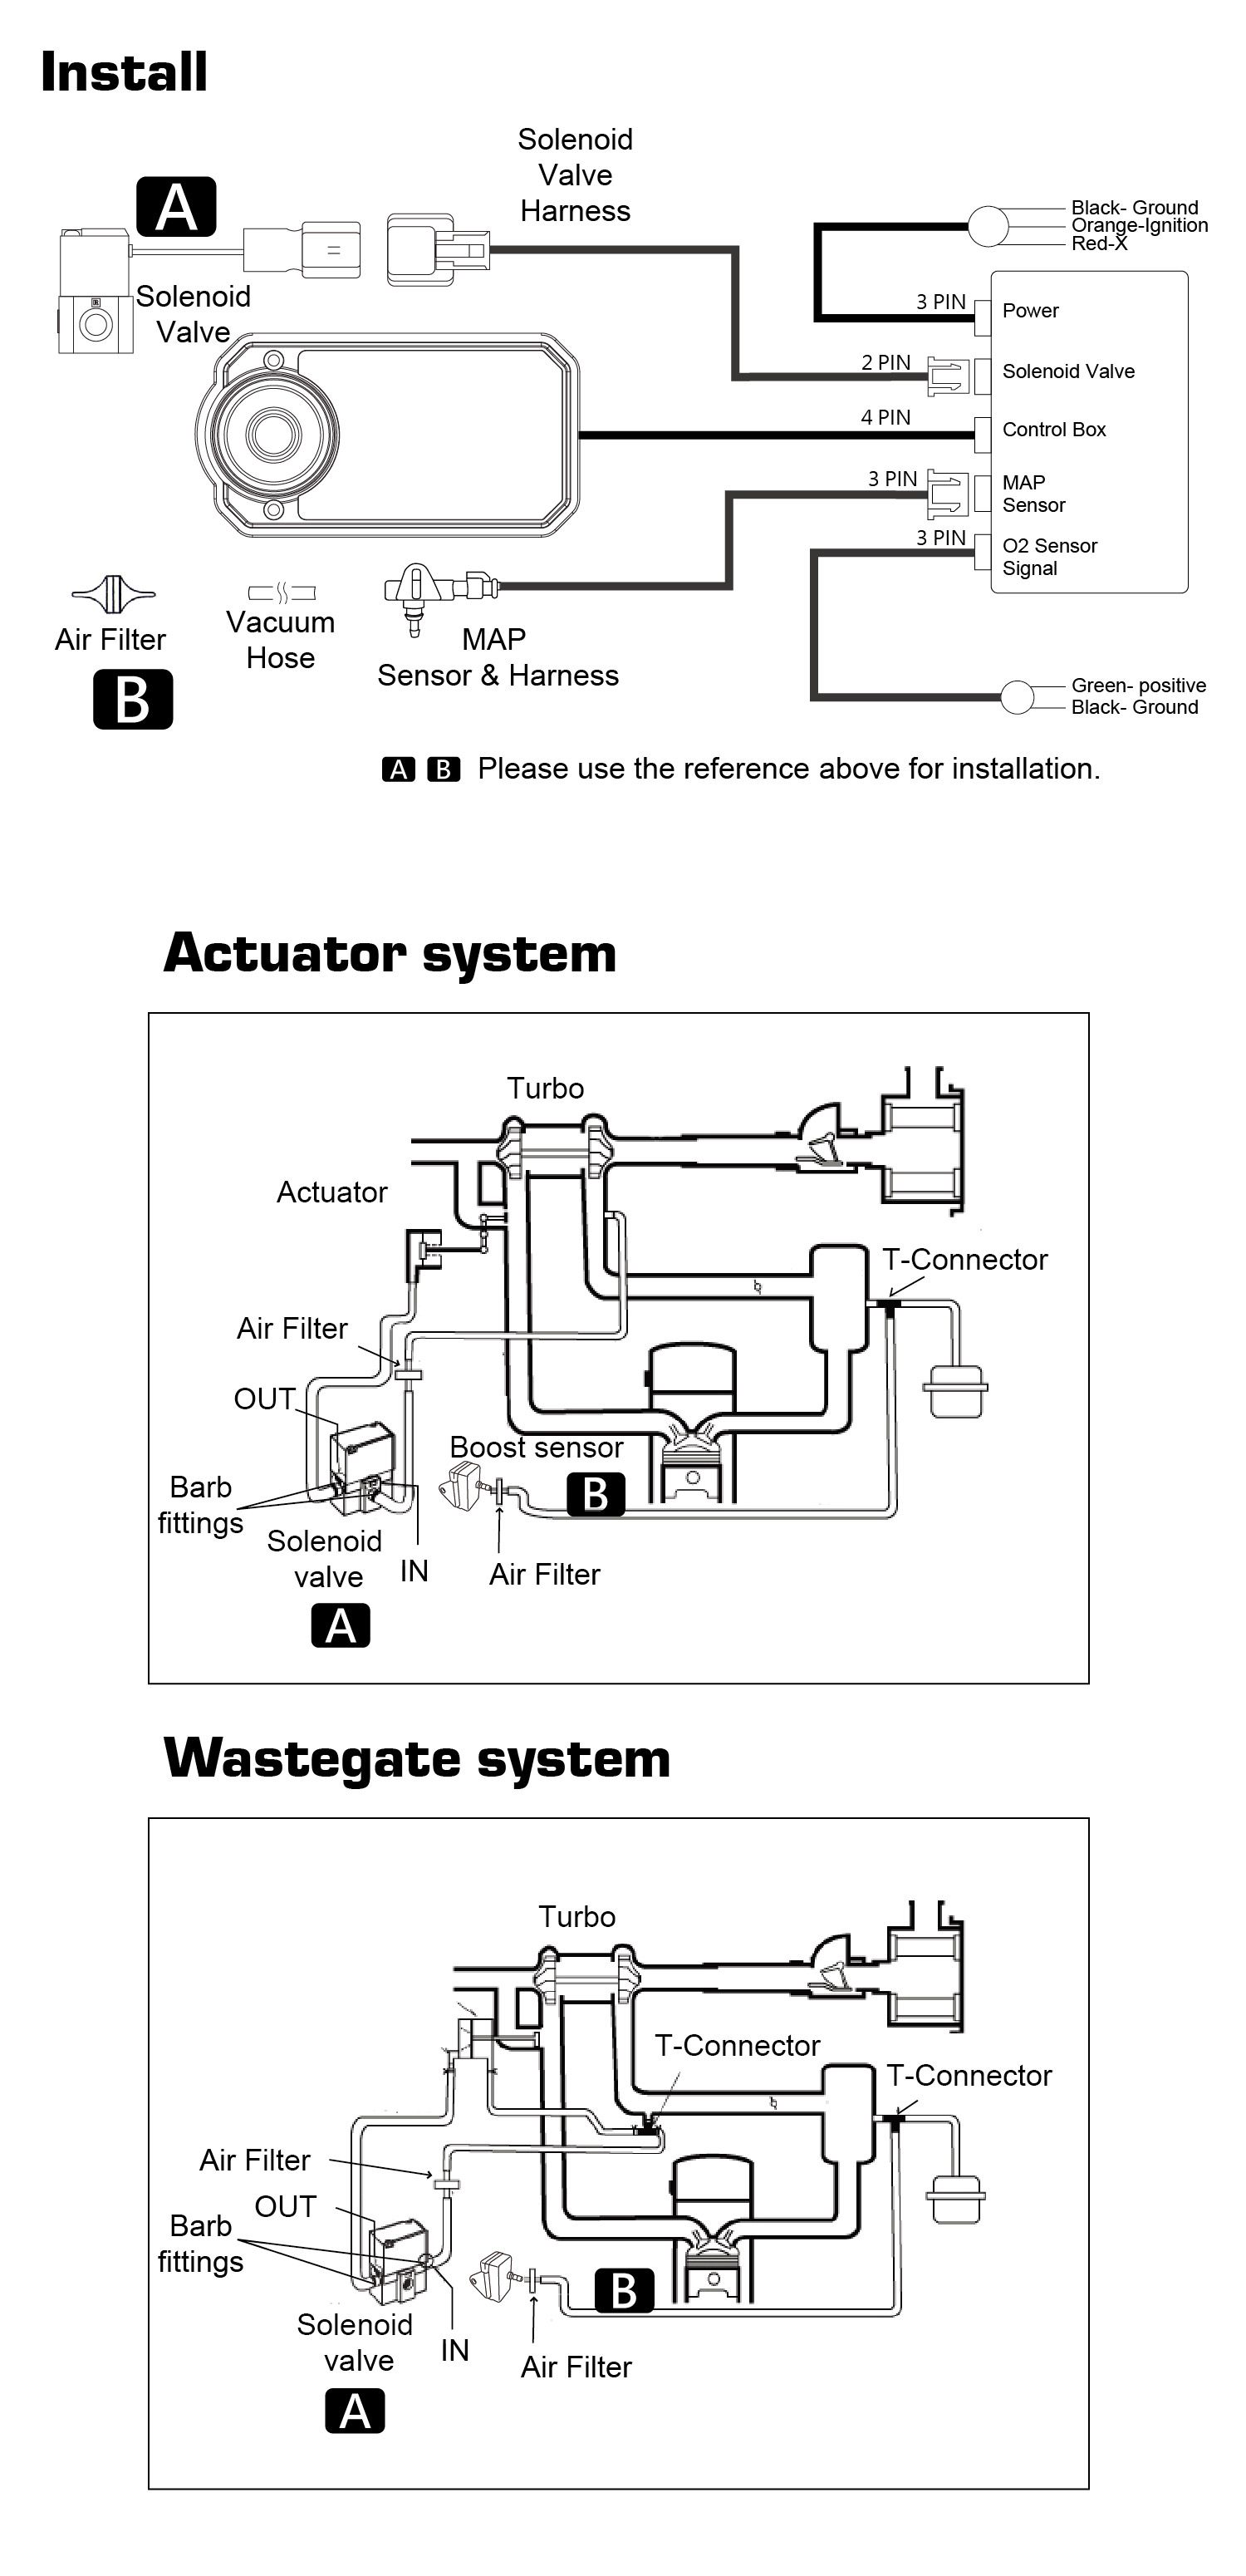 Aufgeteilt in Aktuator, Wastegate zwei Systeme.